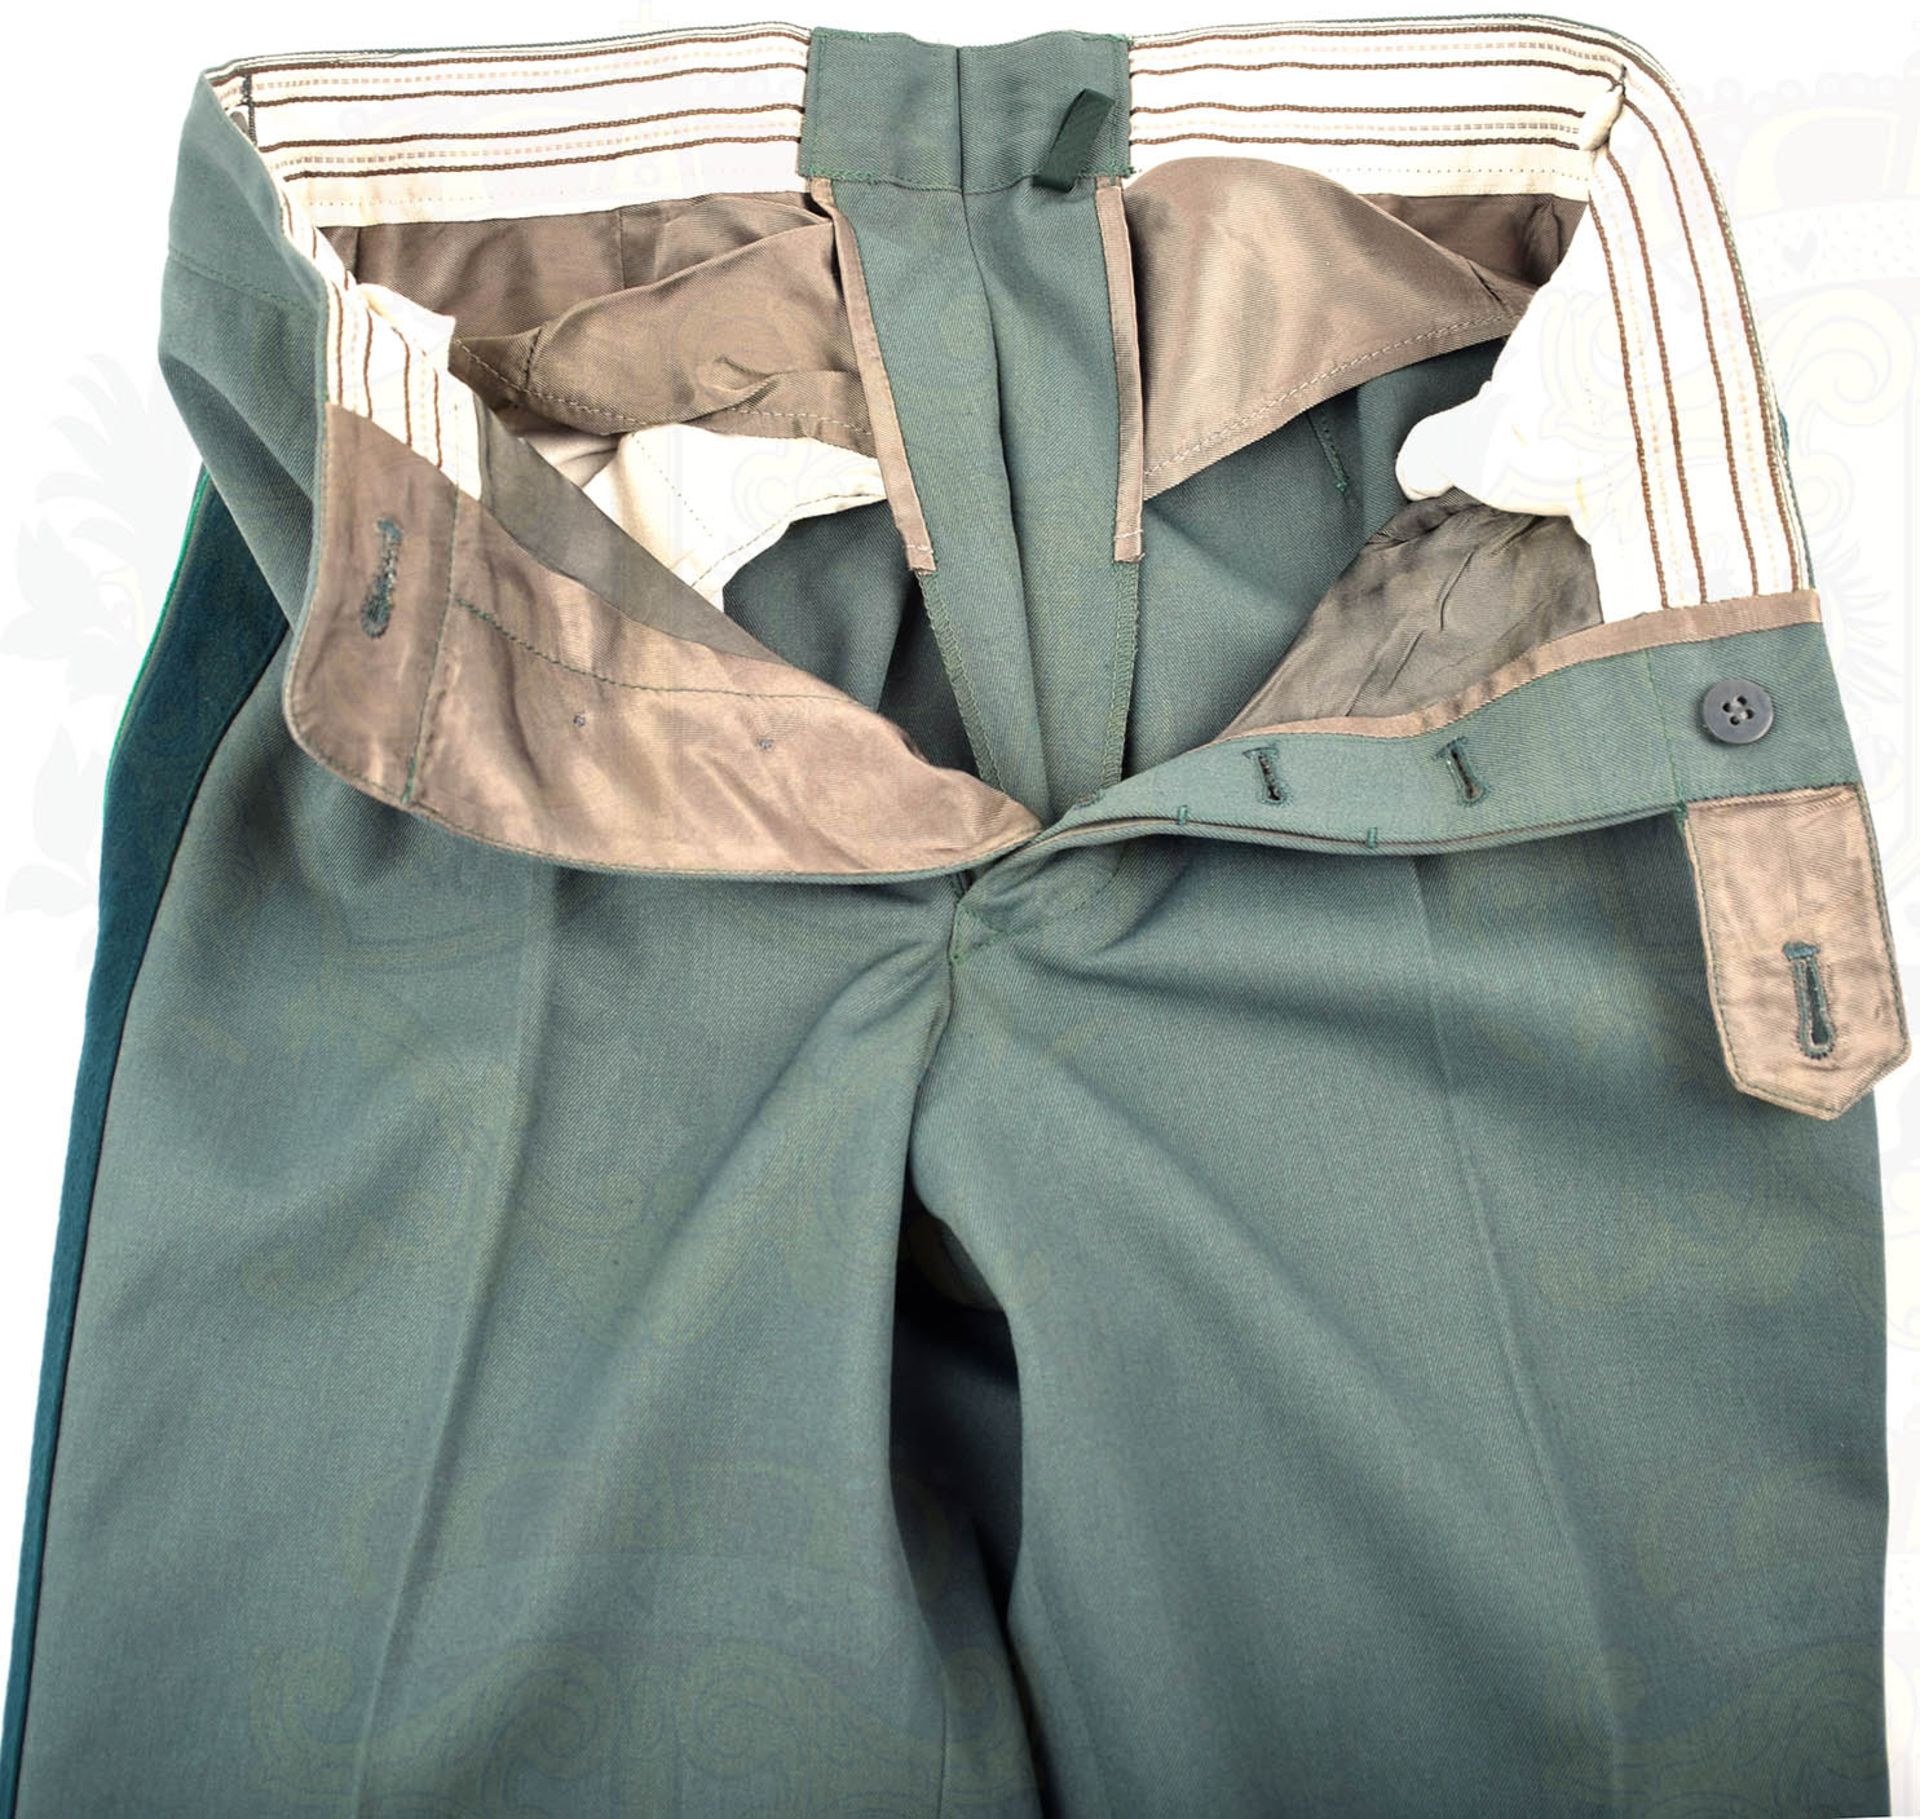 GESELLSCHAFTSUNIFORM GENERALMAJOR DER VP, Uniformrock aus graugrünen Tuch, mit 2 Taschen u. - Bild 10 aus 10